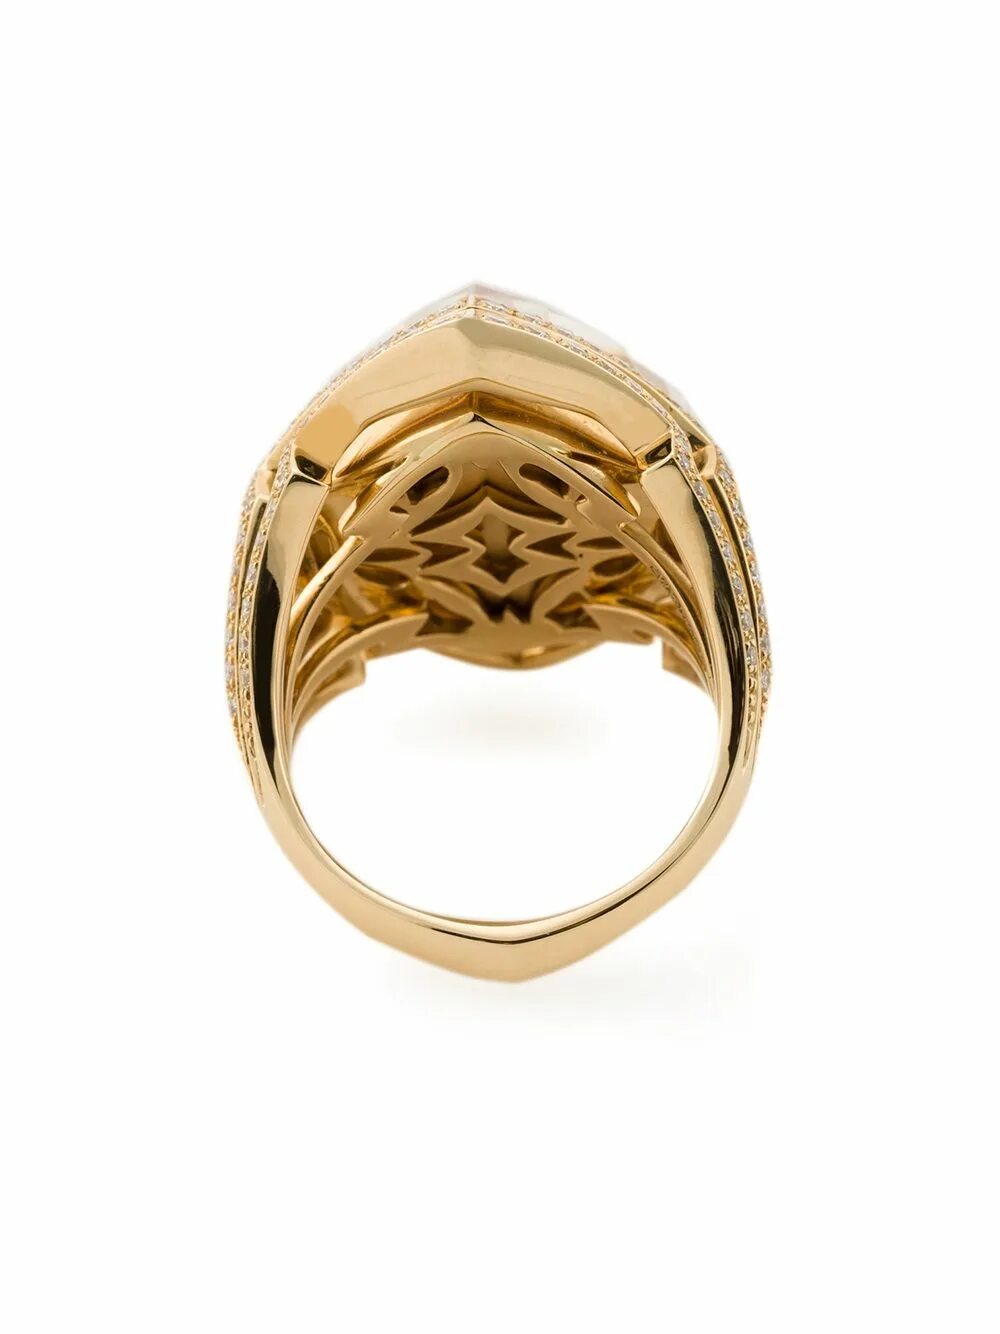 Золотые кольца кристалл. Кольцо Stephen Webster 3018149. Кольцо Webster с ониксом. Кристаллическое кольцо.